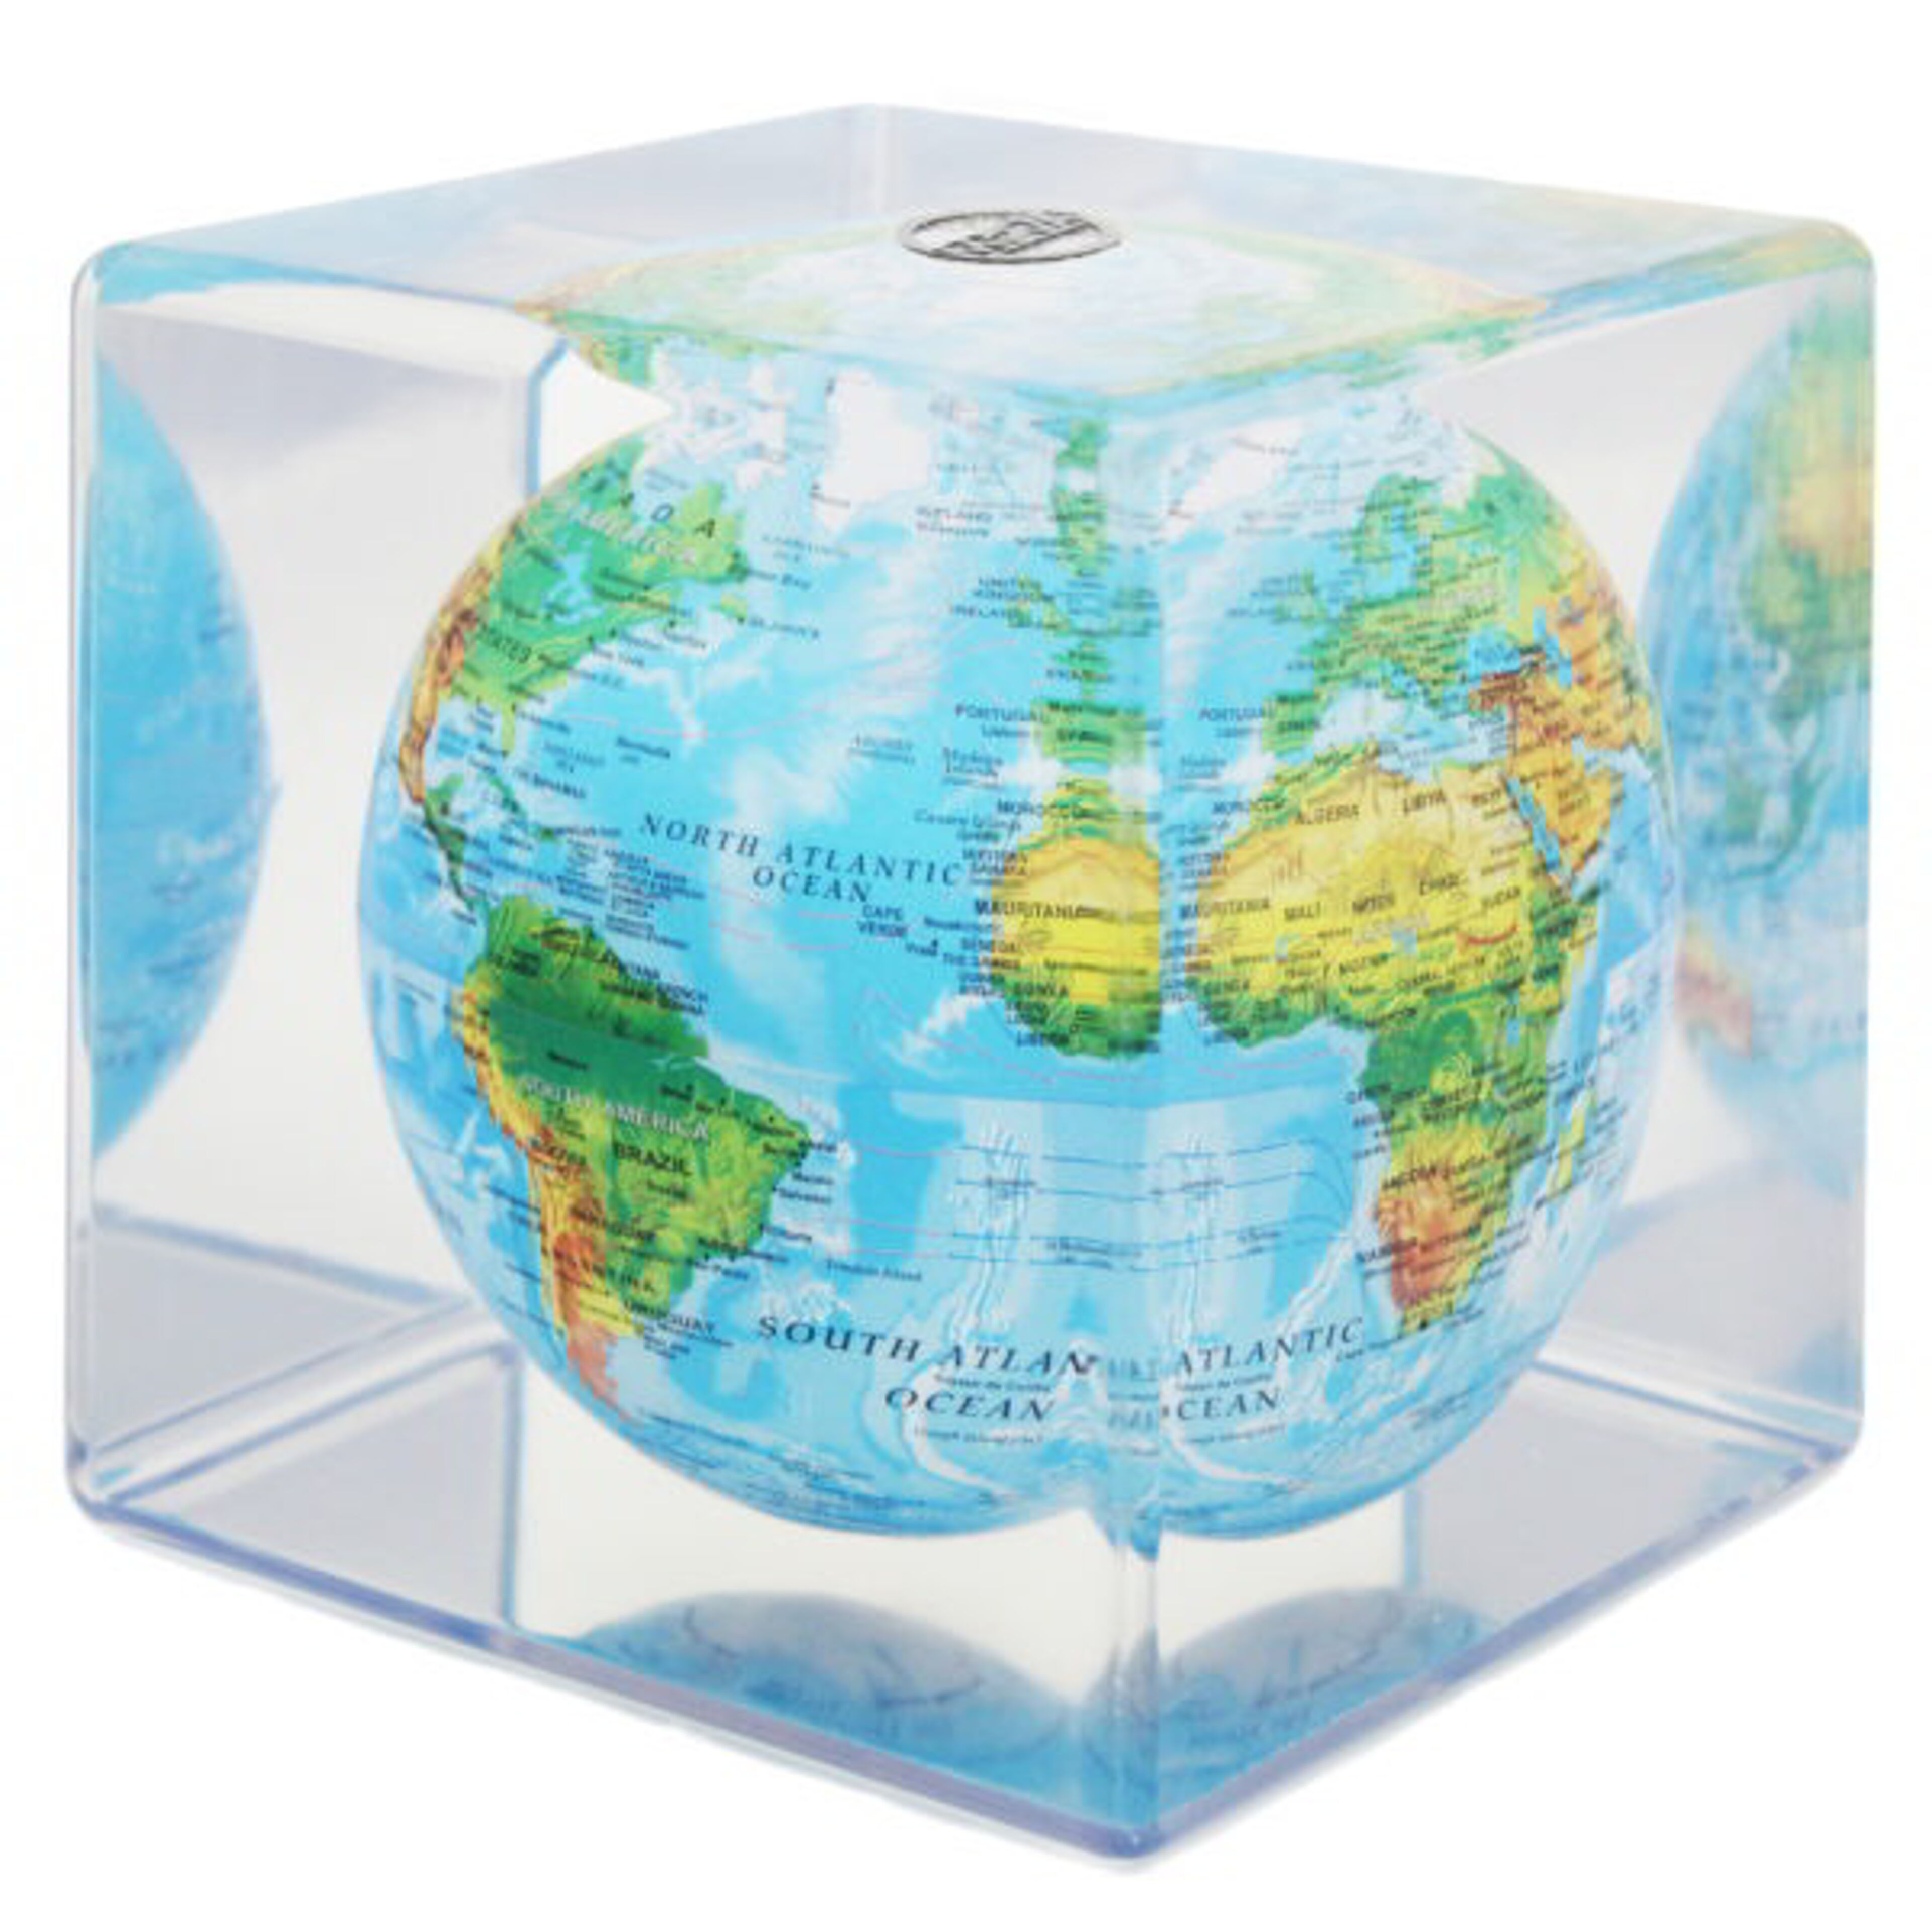 MOVA globo terráqueo en relieve en un cubo